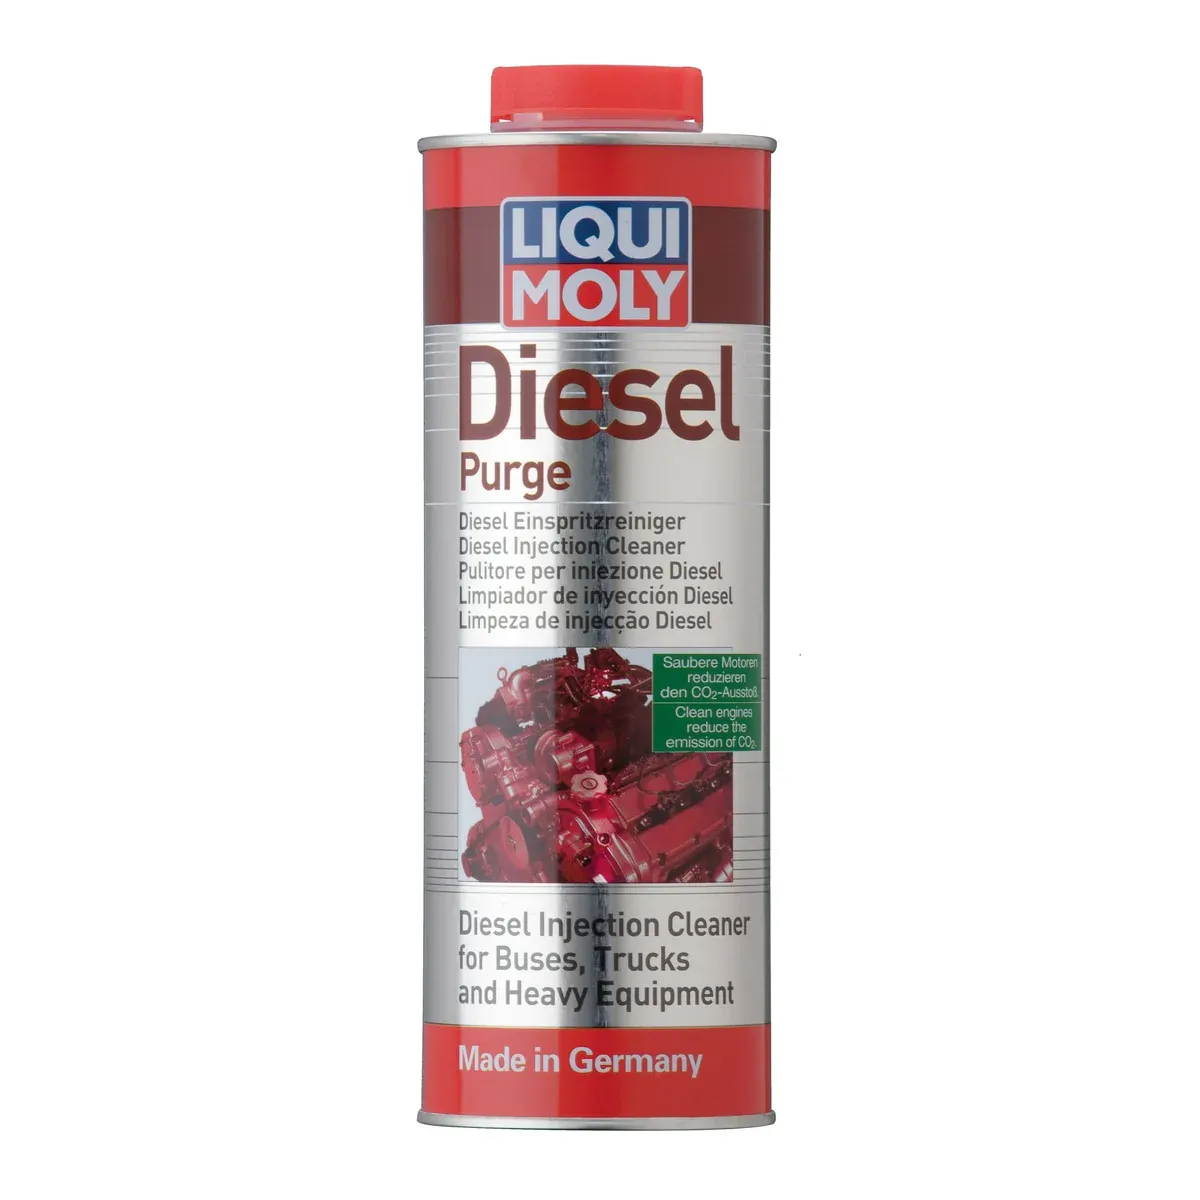 Liqui Moly 2520 Diesel Spoeling/ Diesel Purge 1L Preventief Gebruik